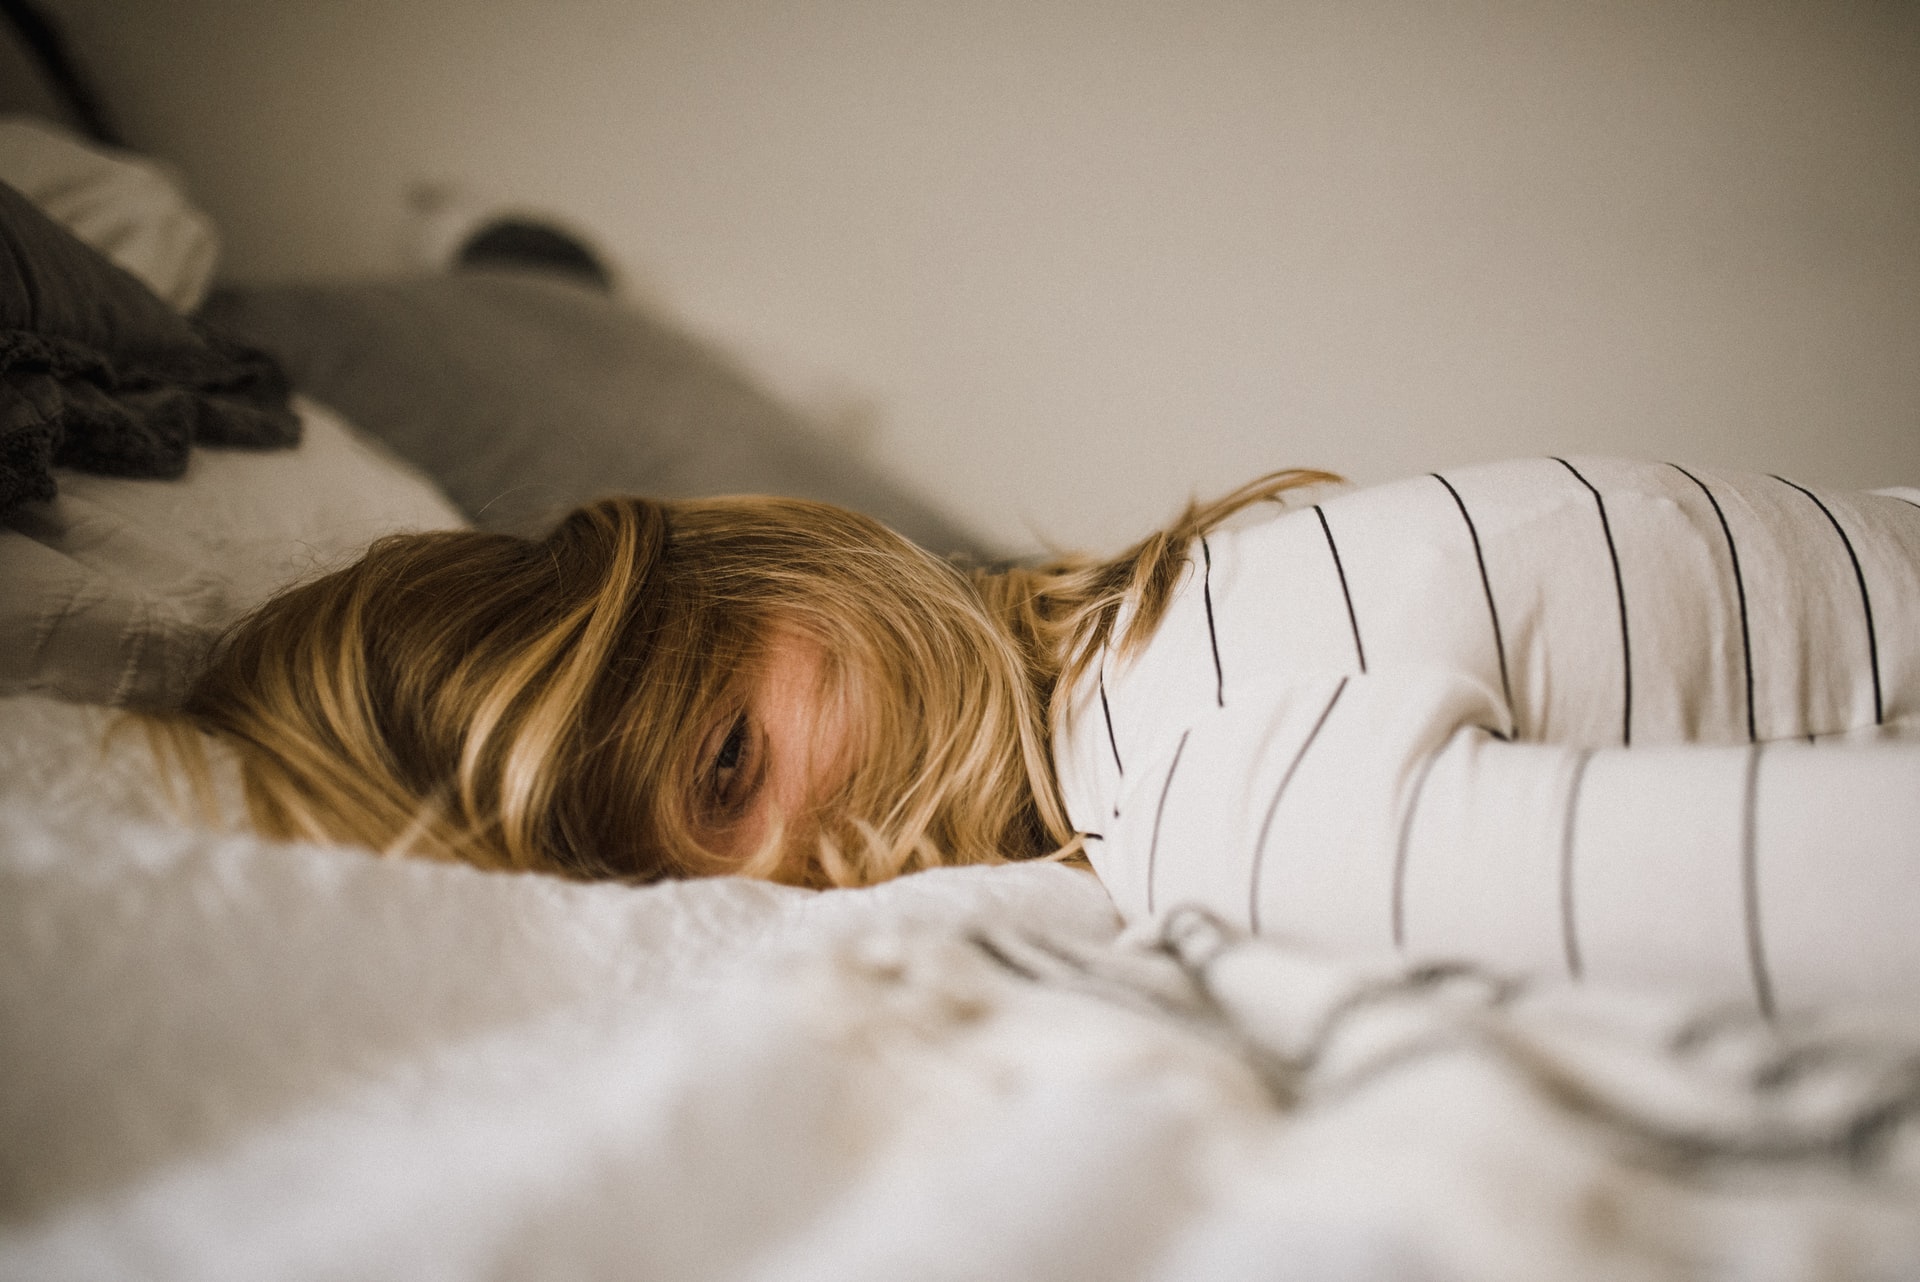 Susah Tidur? Coba 5 Cara Ampuh Tidur Cepat Berikut Ini untuk Penderita Insomnia